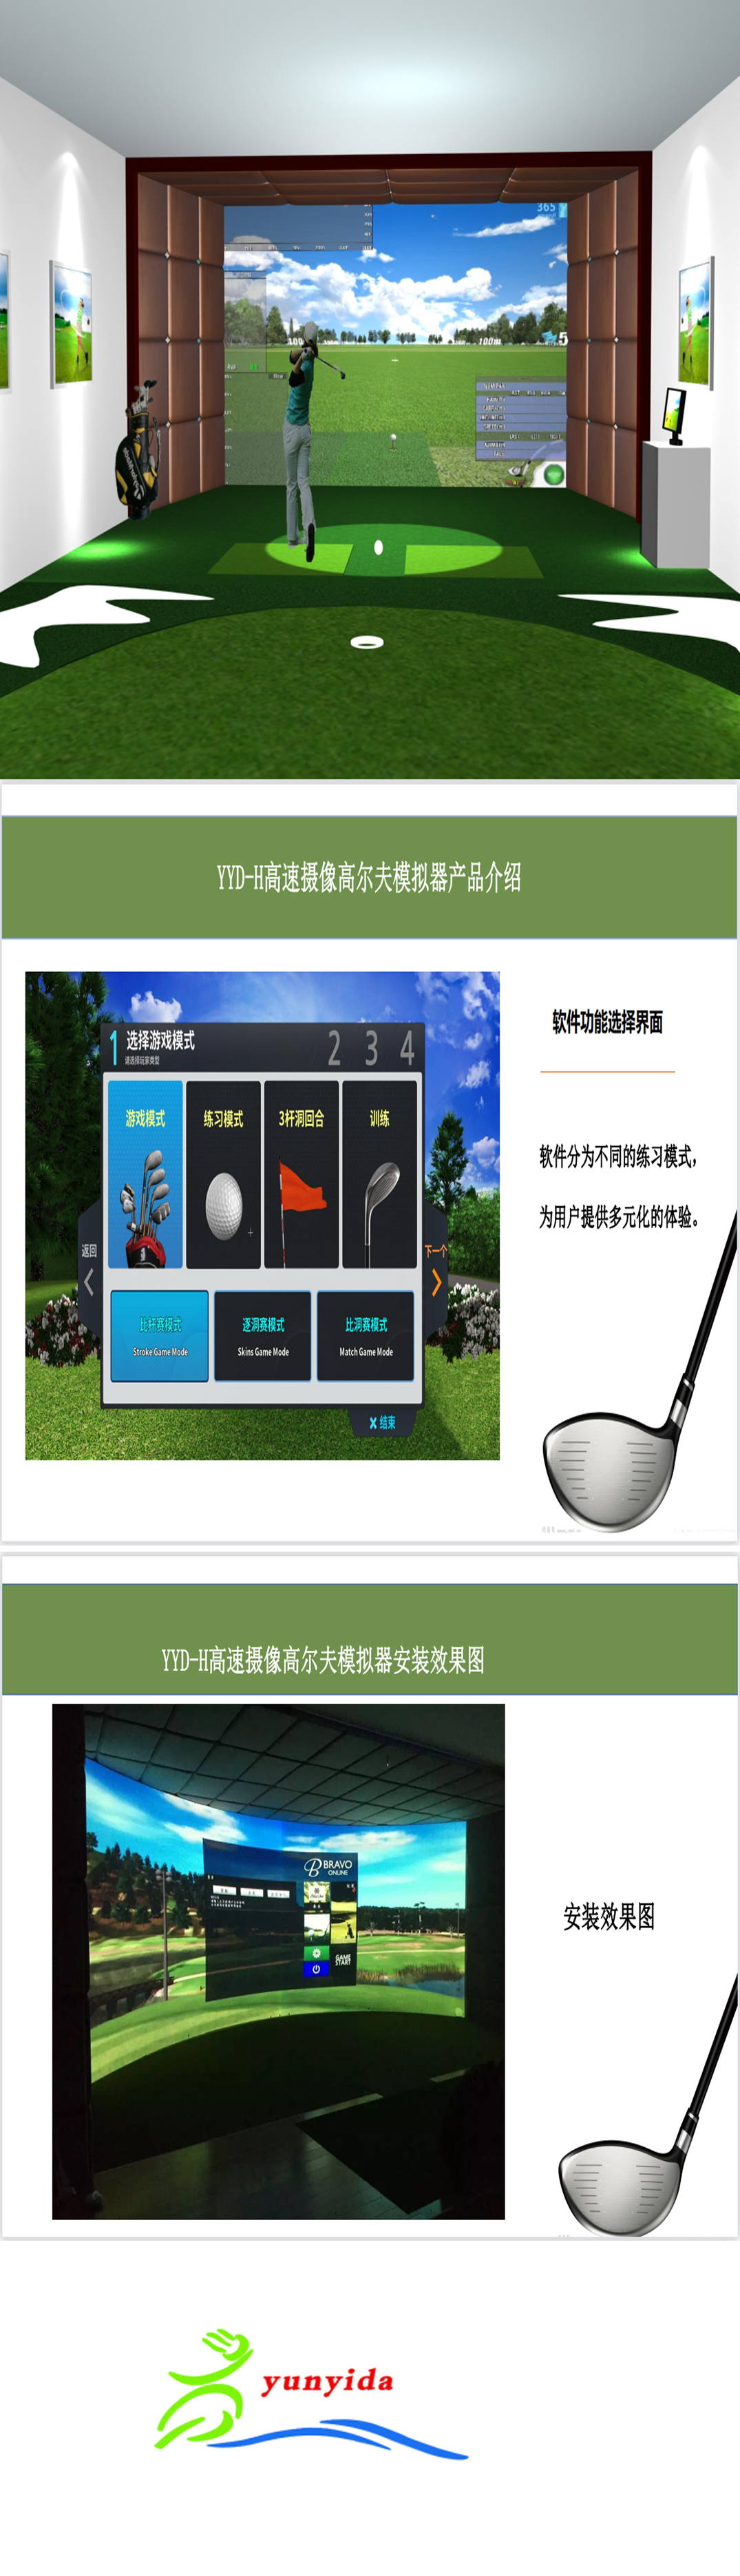 高尔夫模拟器进口设备 44.jpg